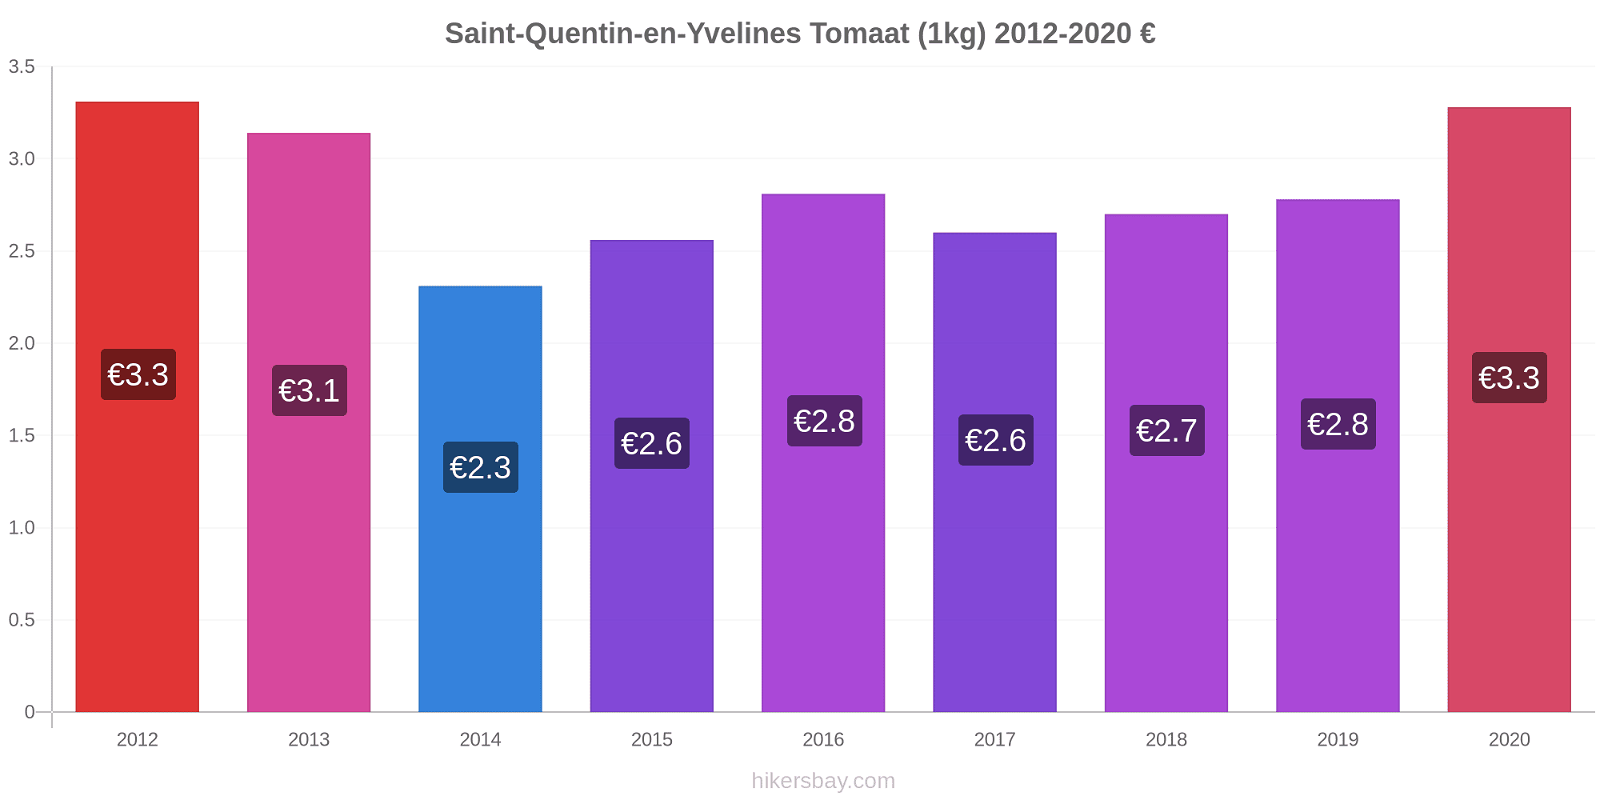 Saint-Quentin-en-Yvelines prijswijzigingen Tomaat (1kg) hikersbay.com